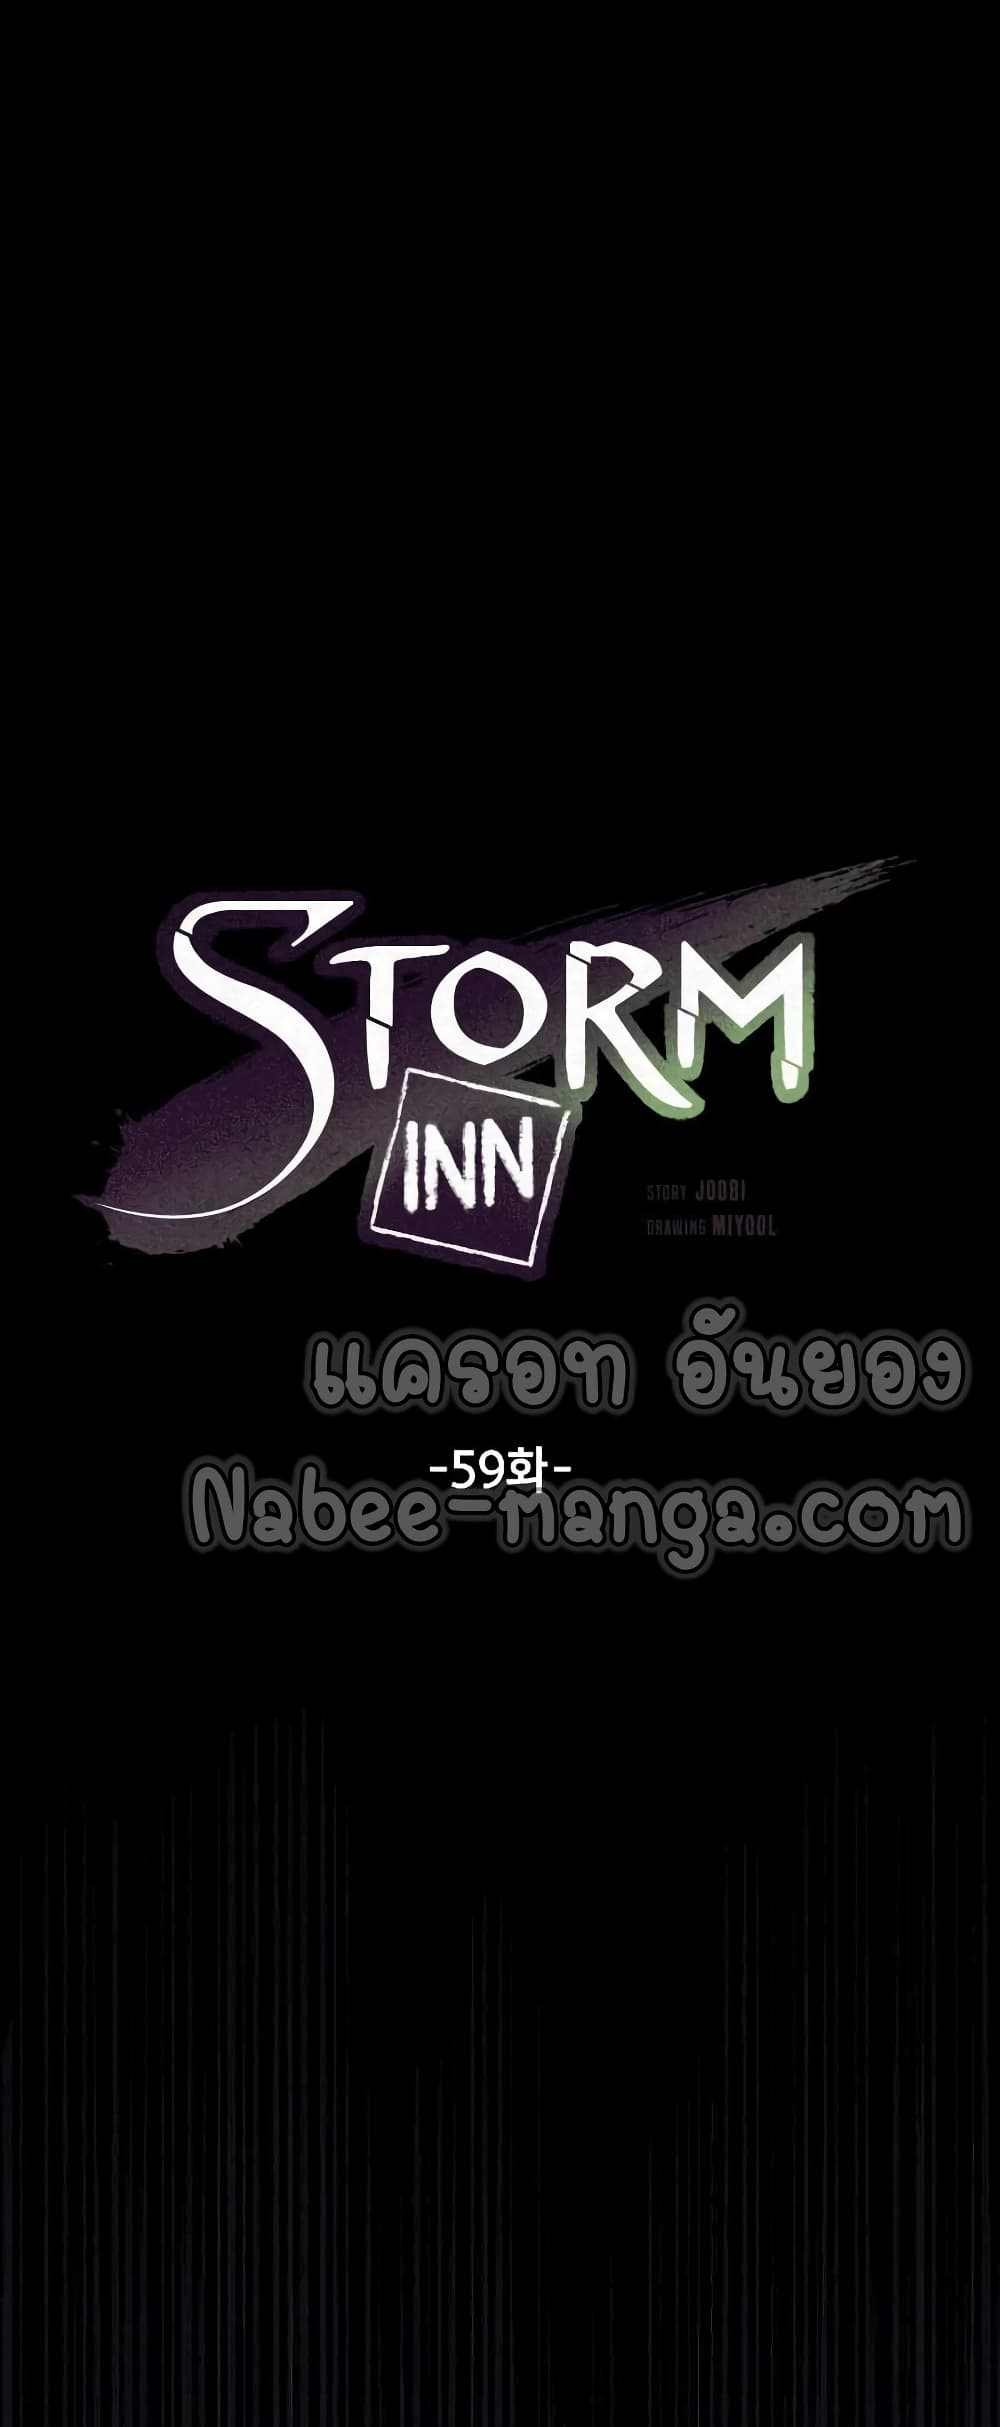 Storm Inn 59-59